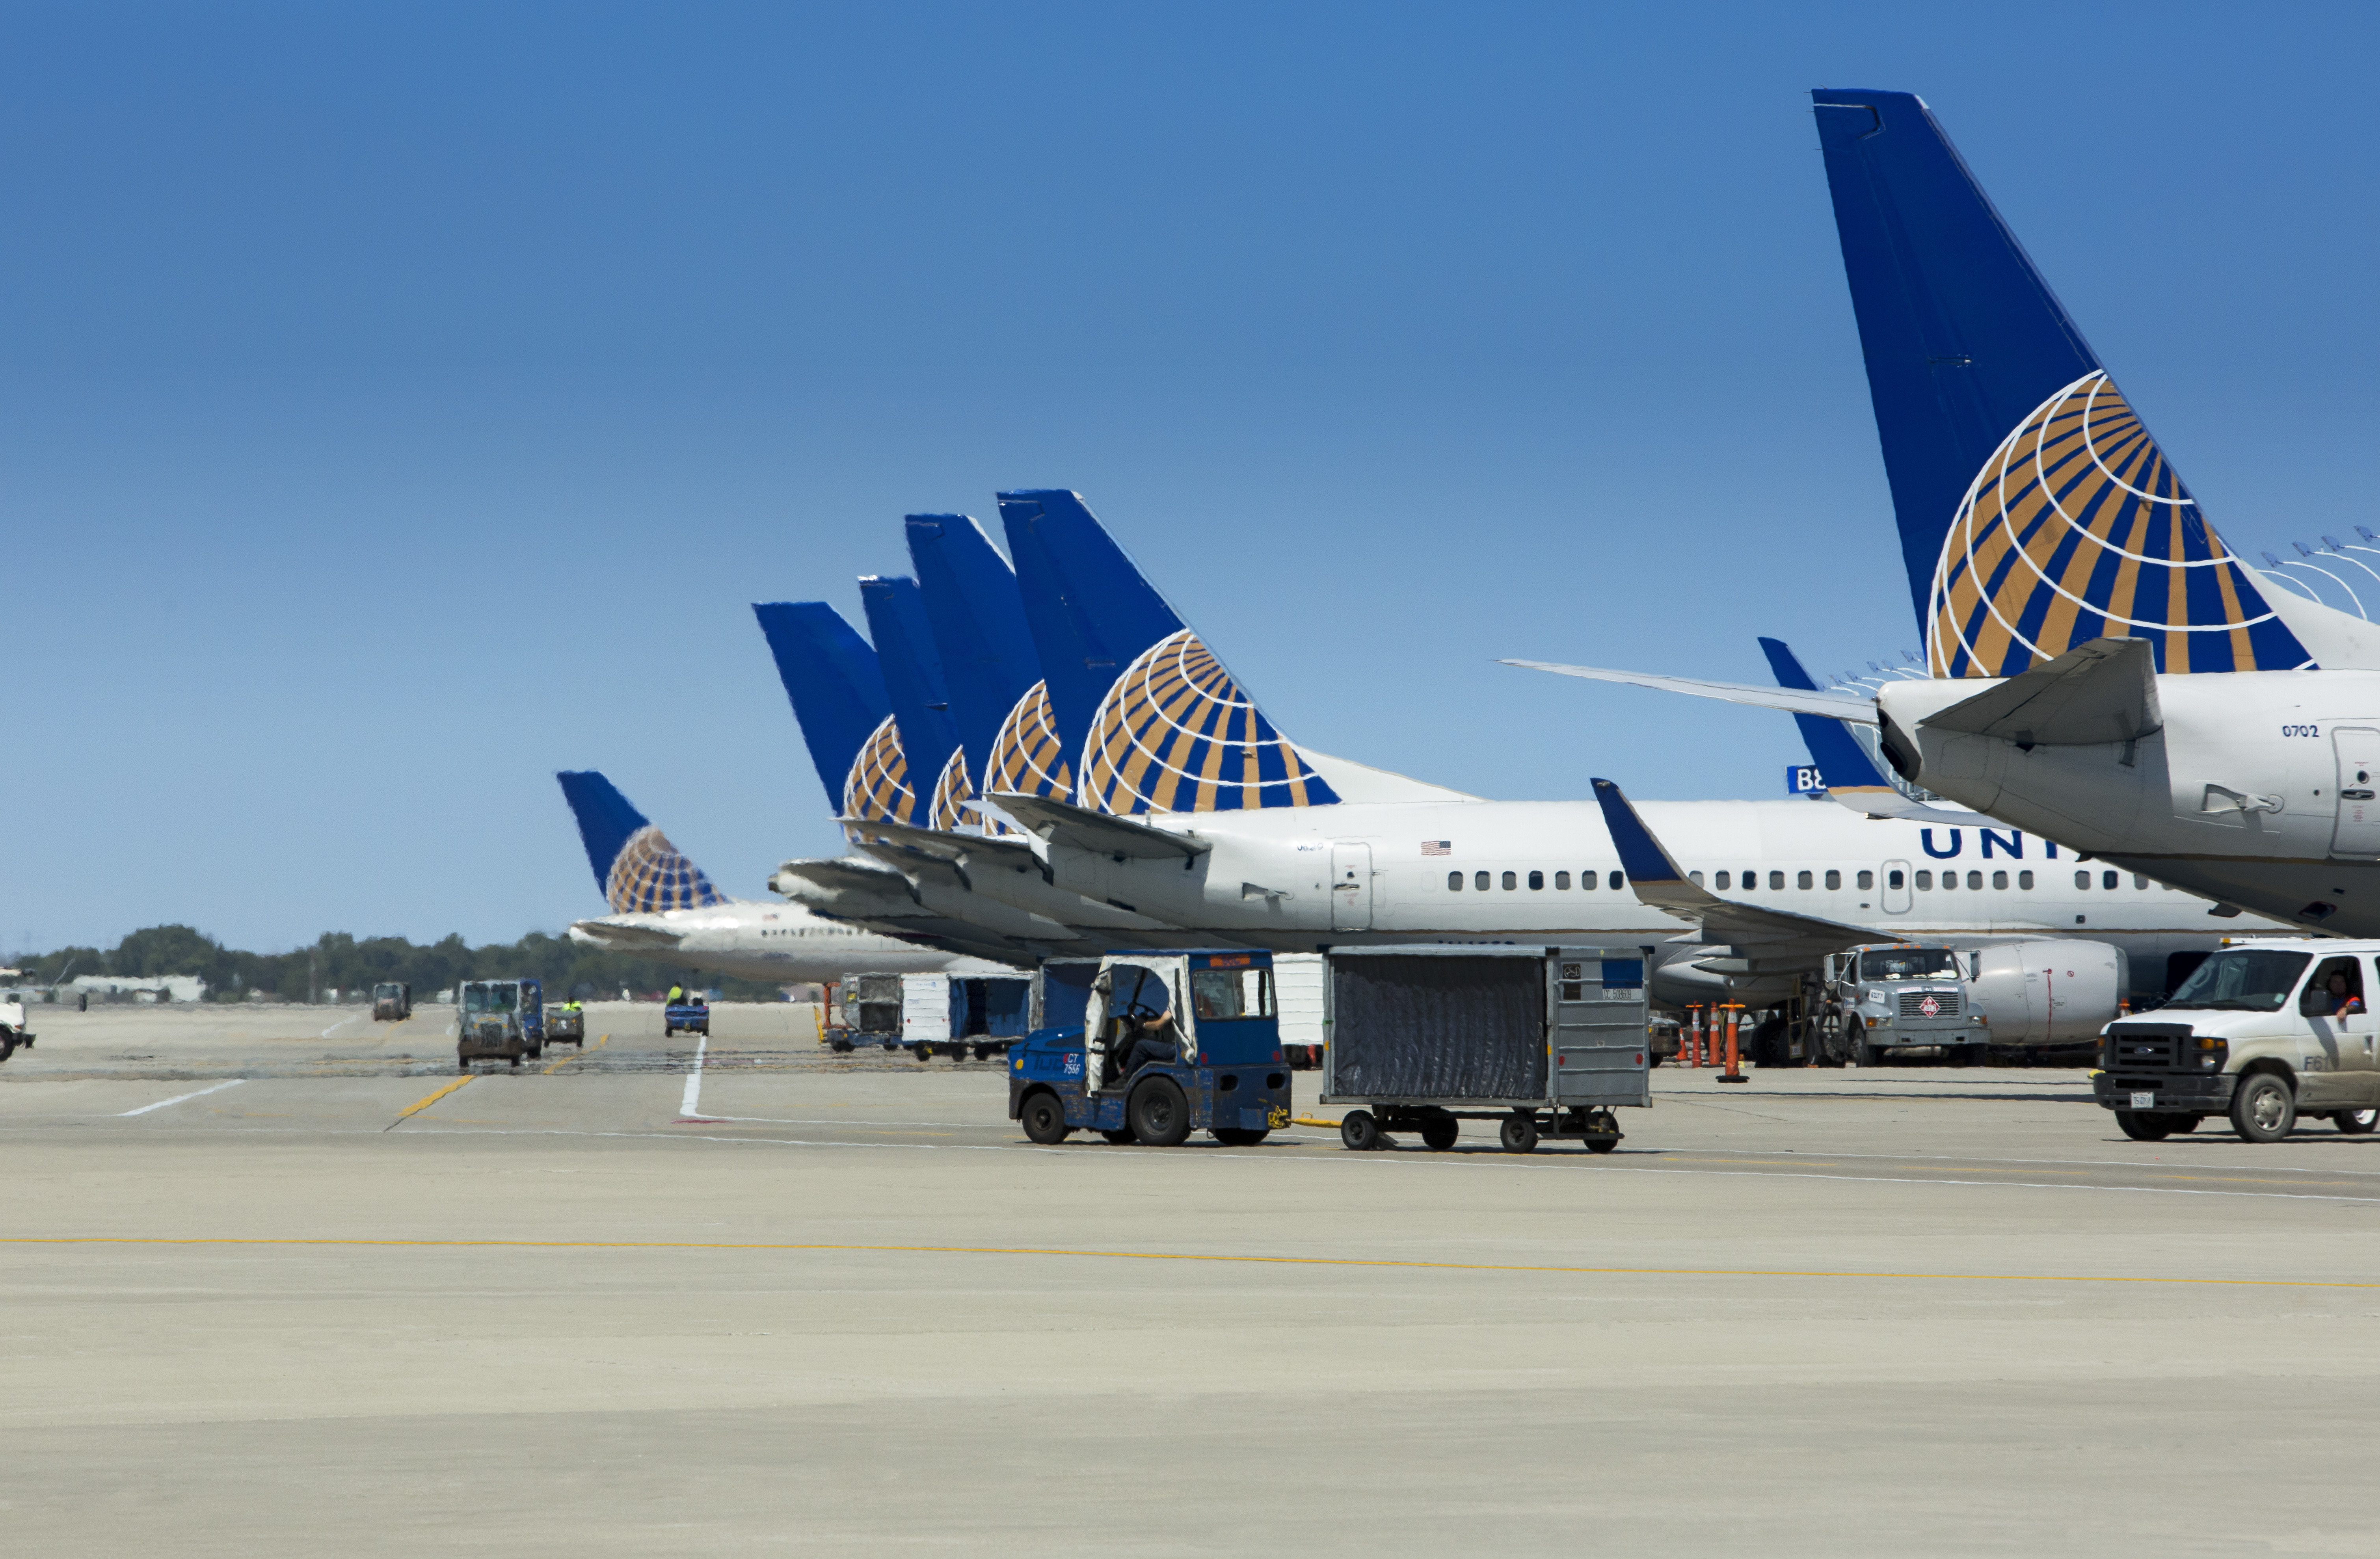 origin Removendo CO2 do ar, United Airlines quer se tornar 100% verde até 2050